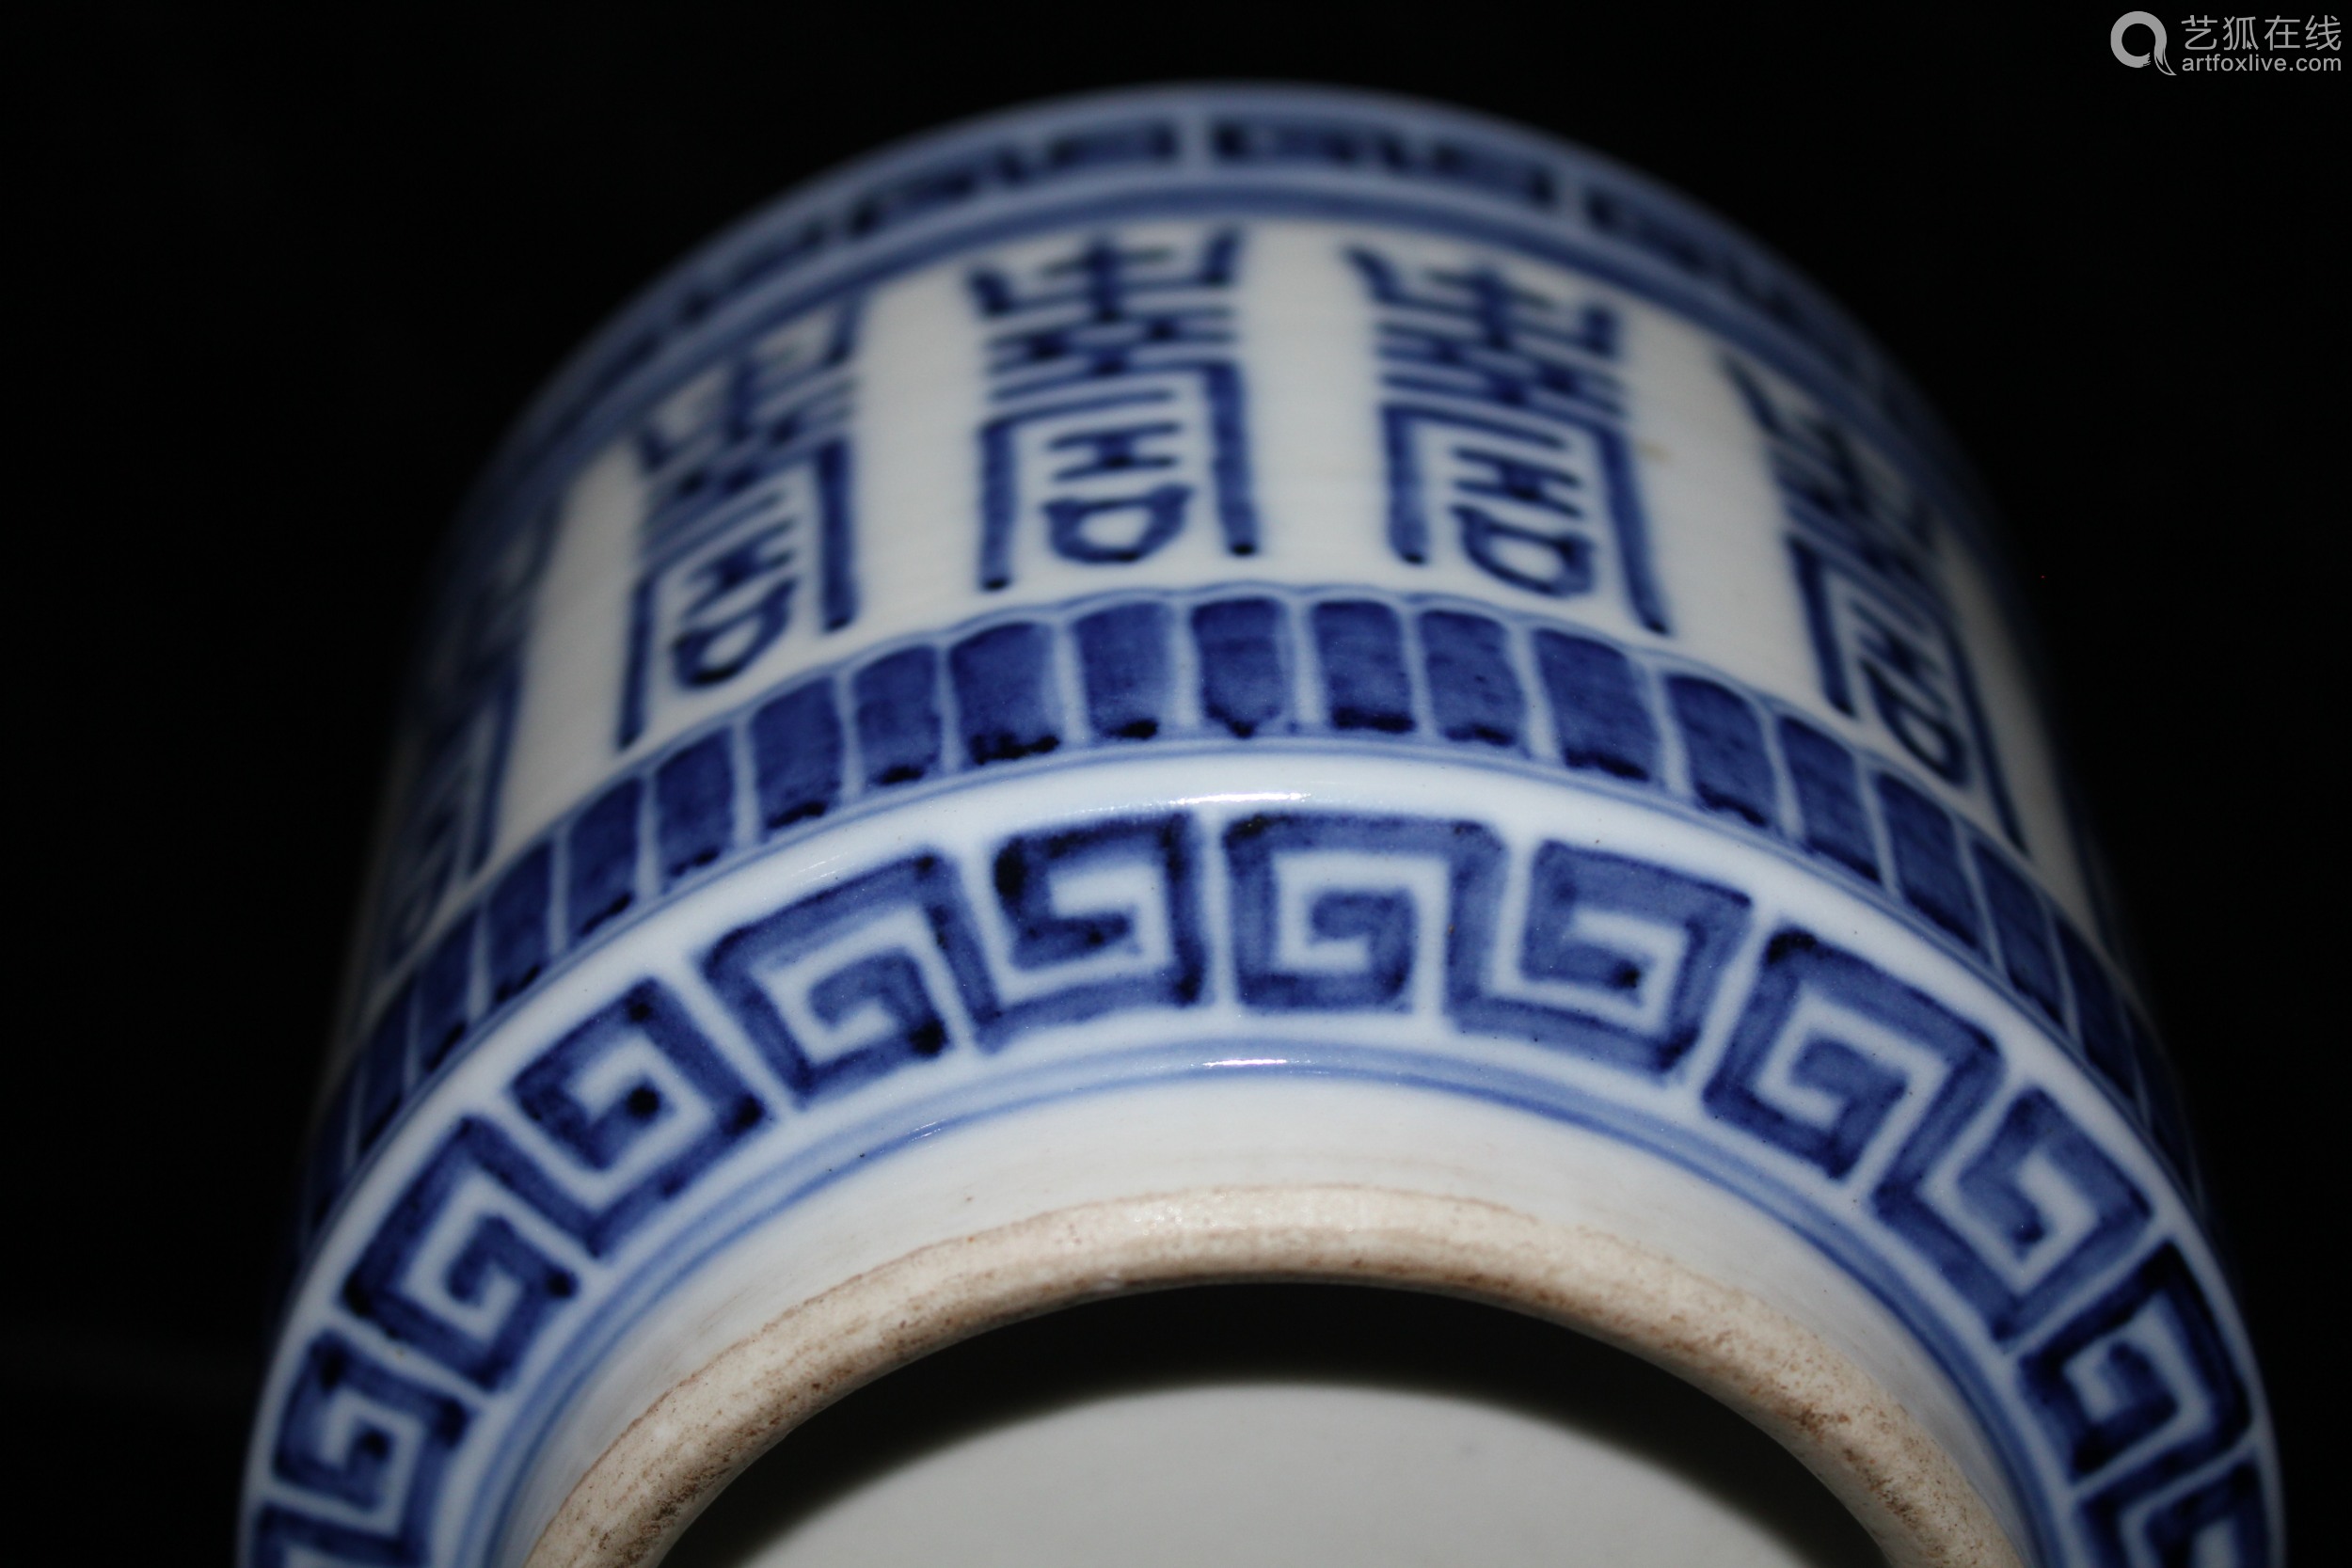 青花寿字纹筒式瓷香炉